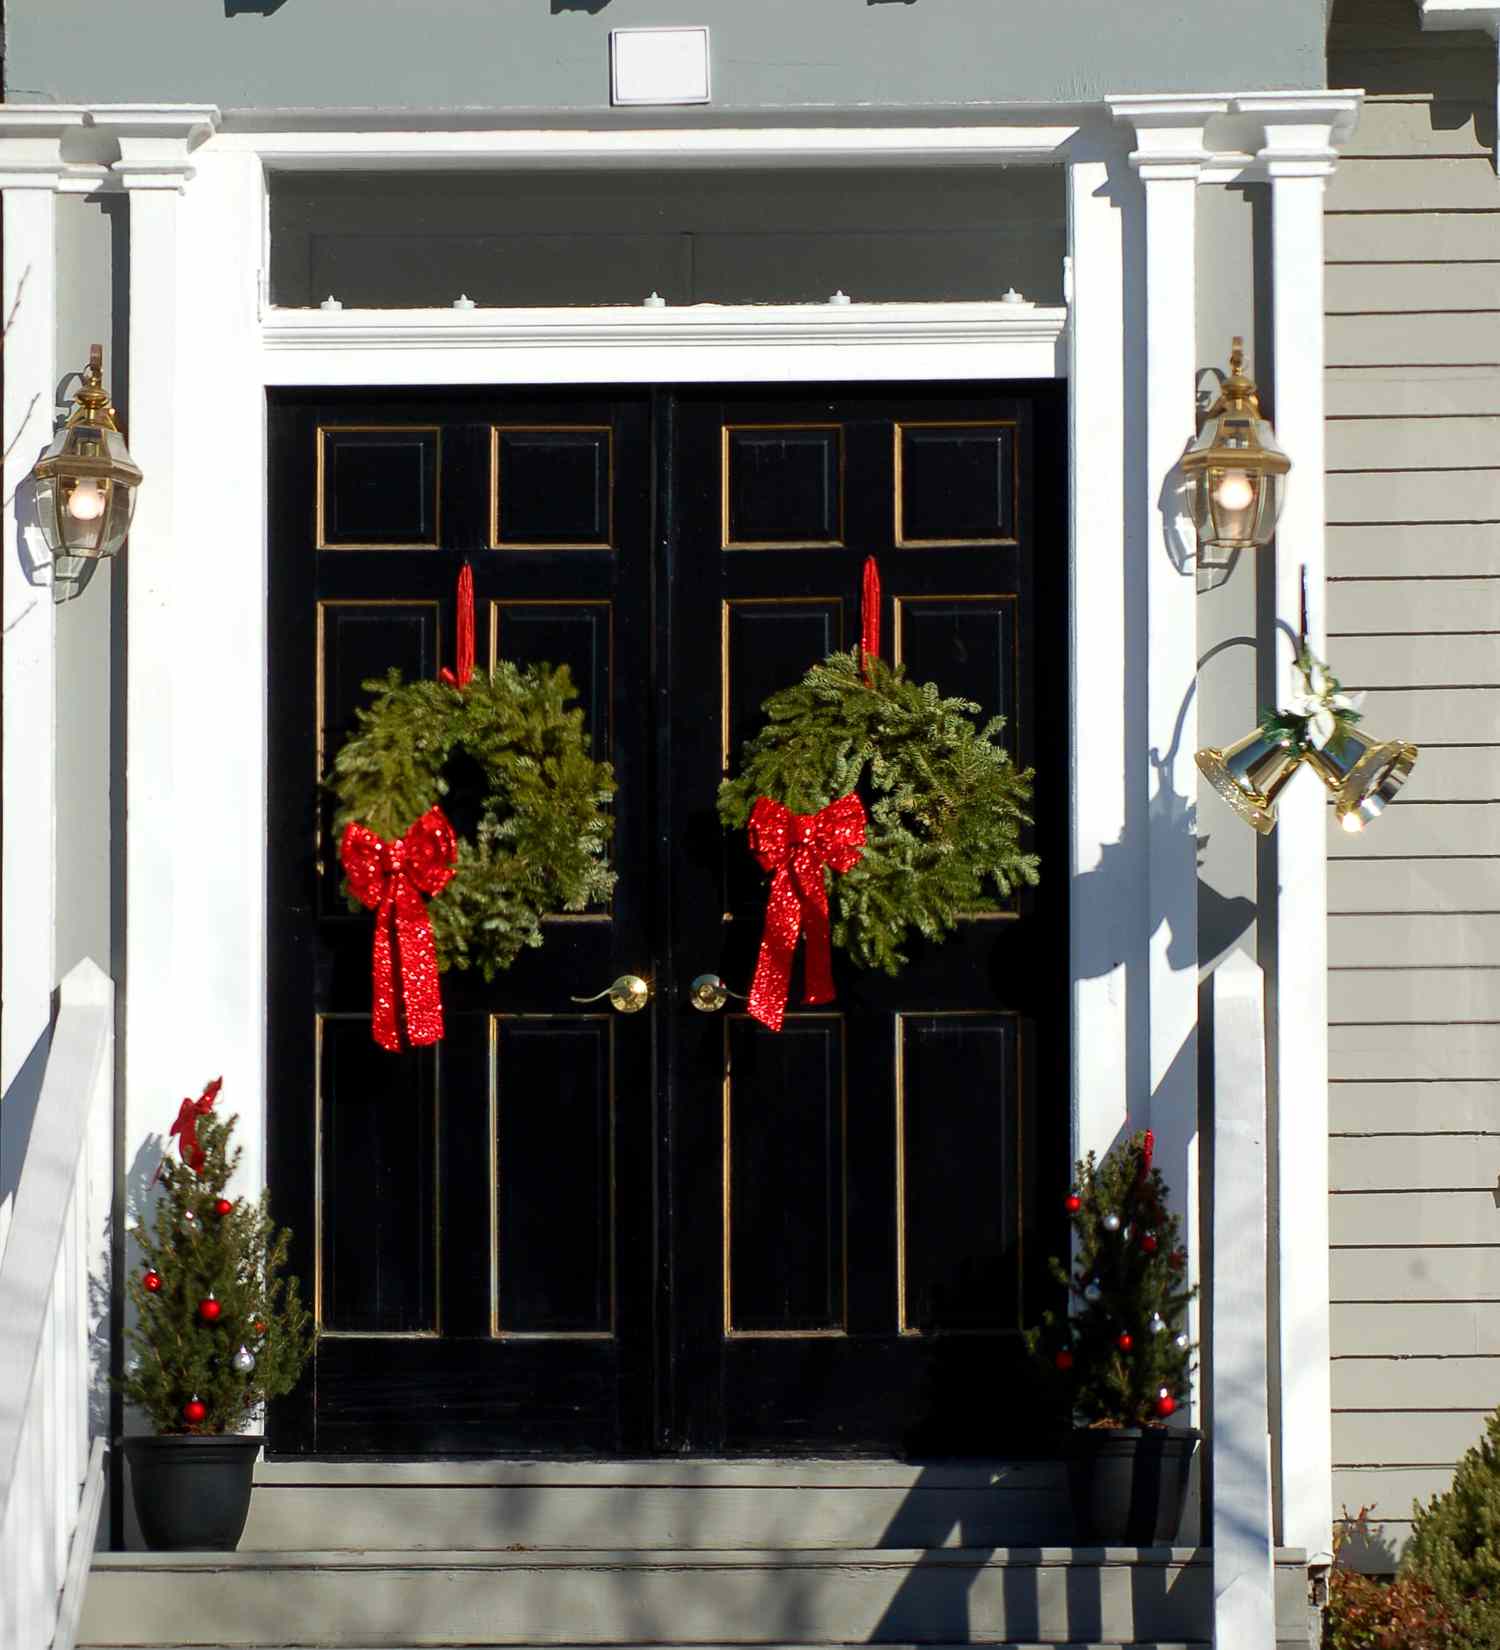 Bild: Haus mit Doppeltüren, an denen jeweils ein Weihnachtskranz hängt. Das ist eine einfache Weihnachtsdekoration.